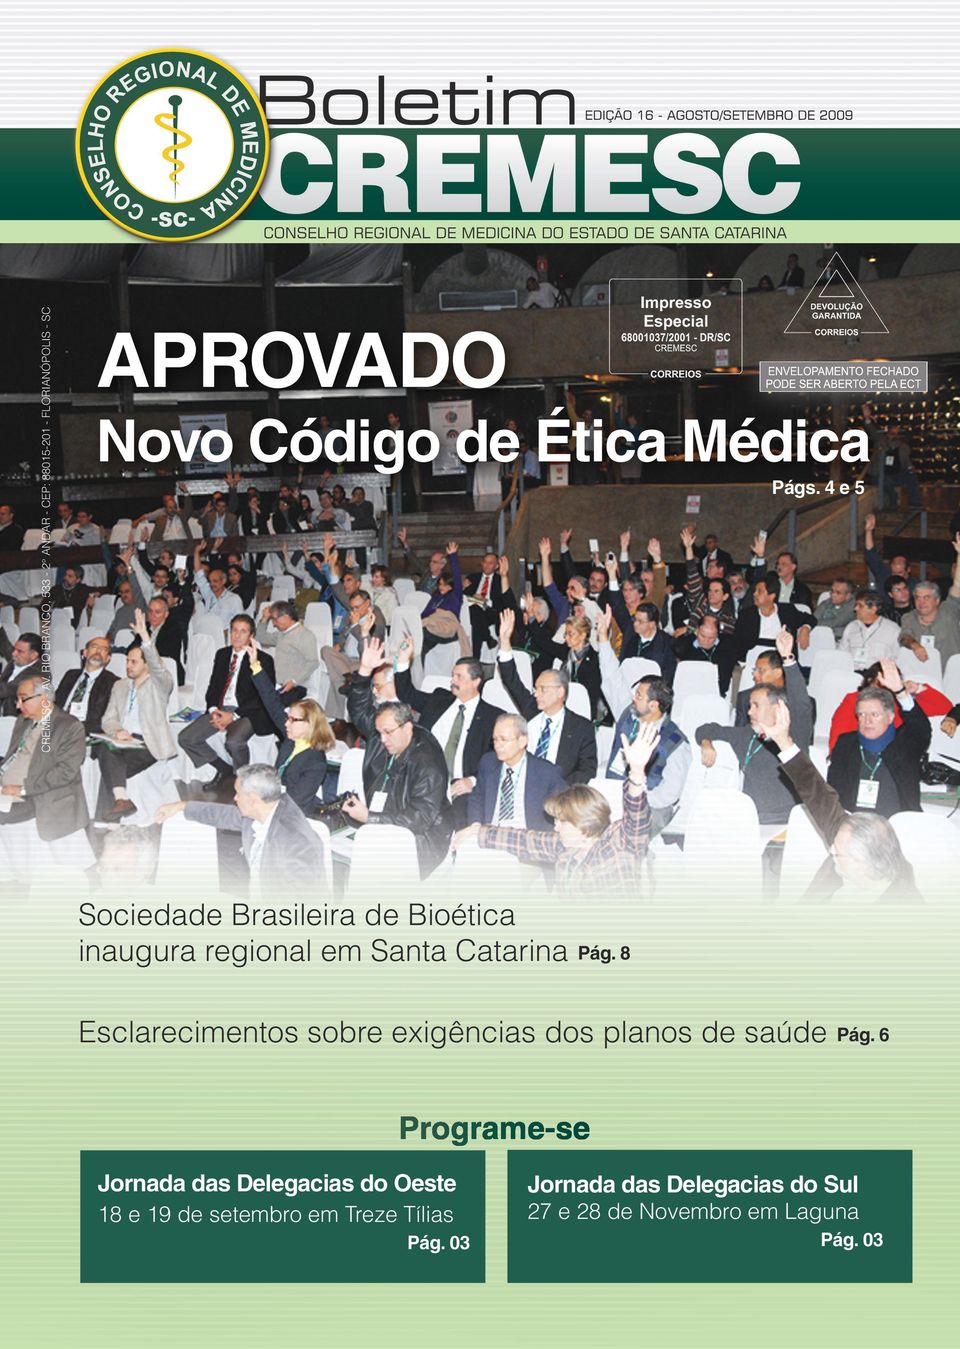 4 e 5 Sociedade Brasileira de Bioética inaugura regional em Santa Catarina Pág.